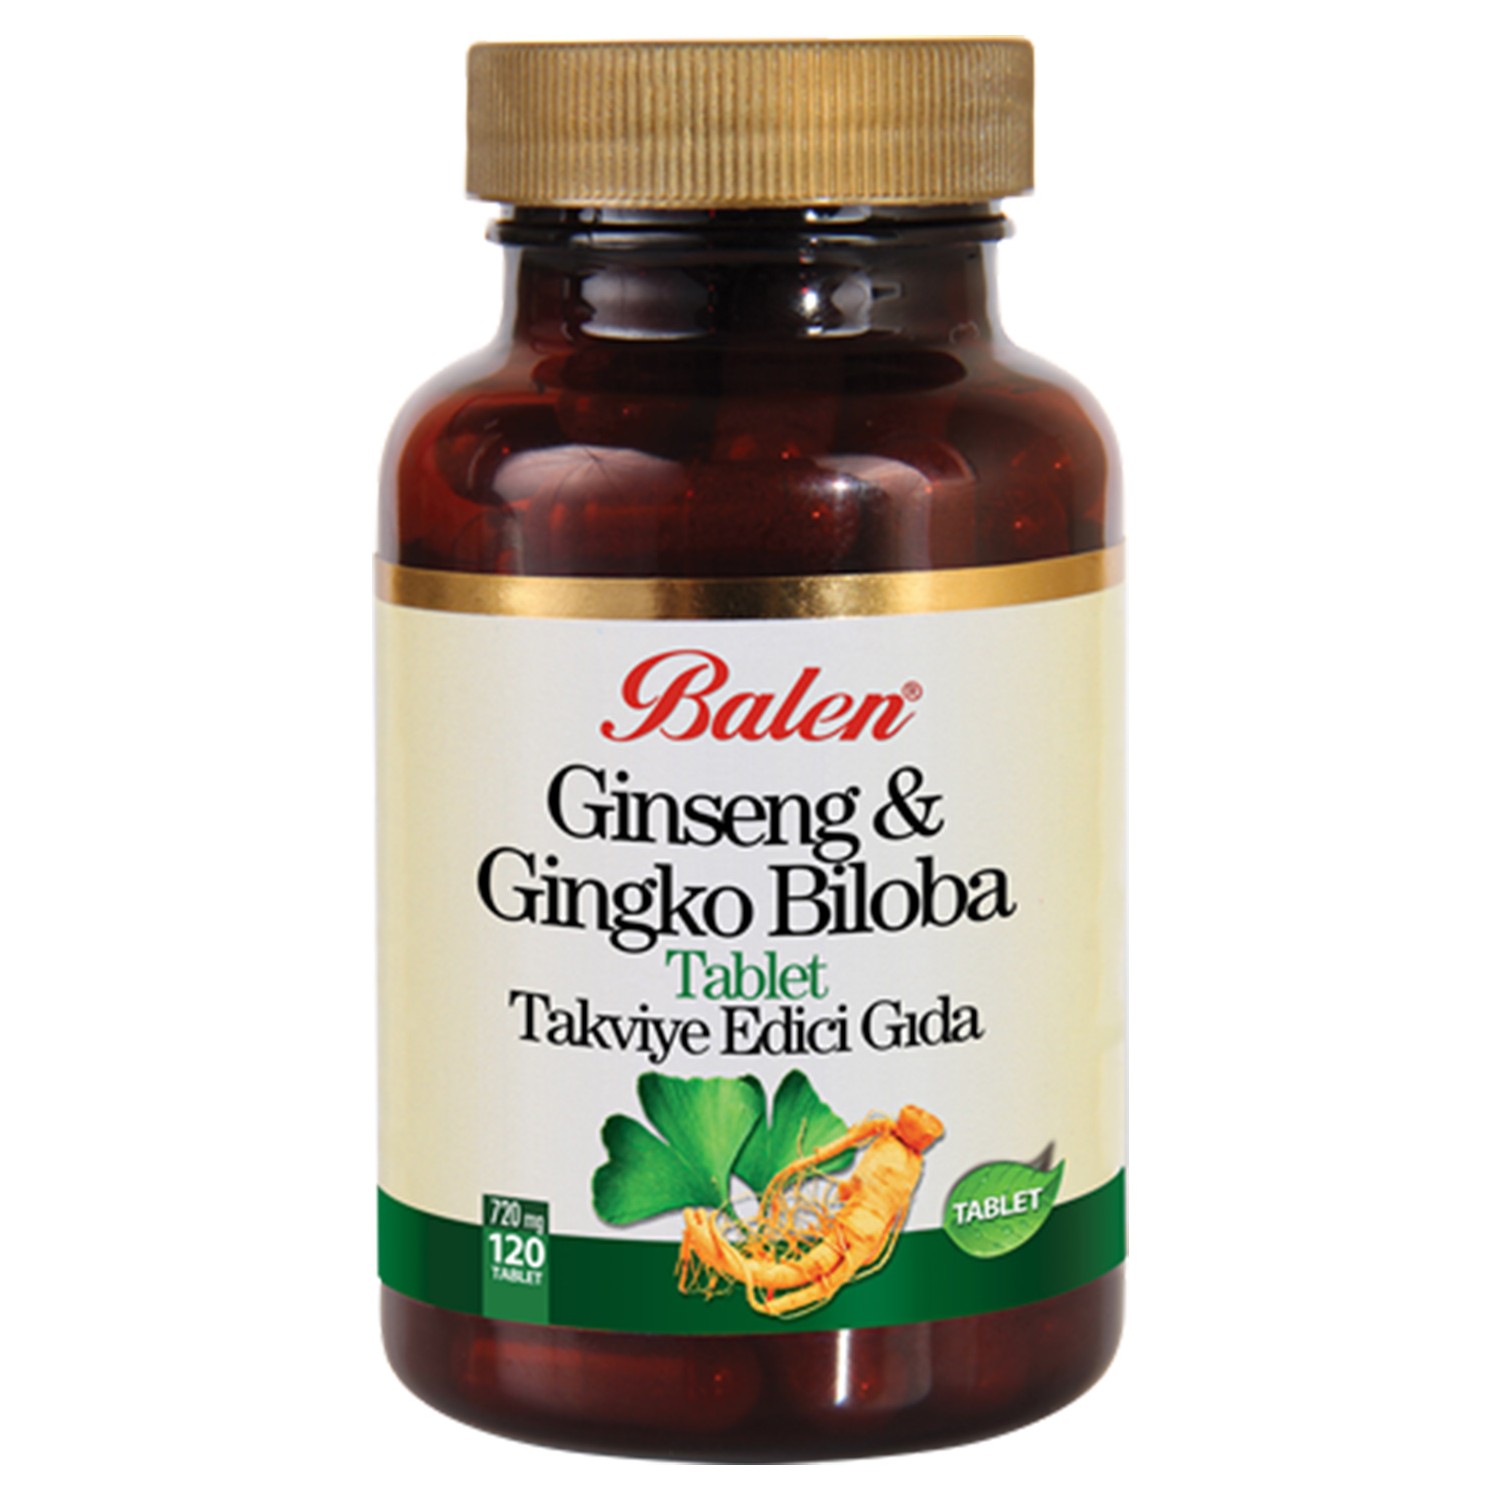 Красный женьшень Balen Ginkgo Biloba, 120 капсул, 720 мг ginkgo biloba 600 mg 60 capsules ginkgo biloba capsules balen 60 tablets made in turkey